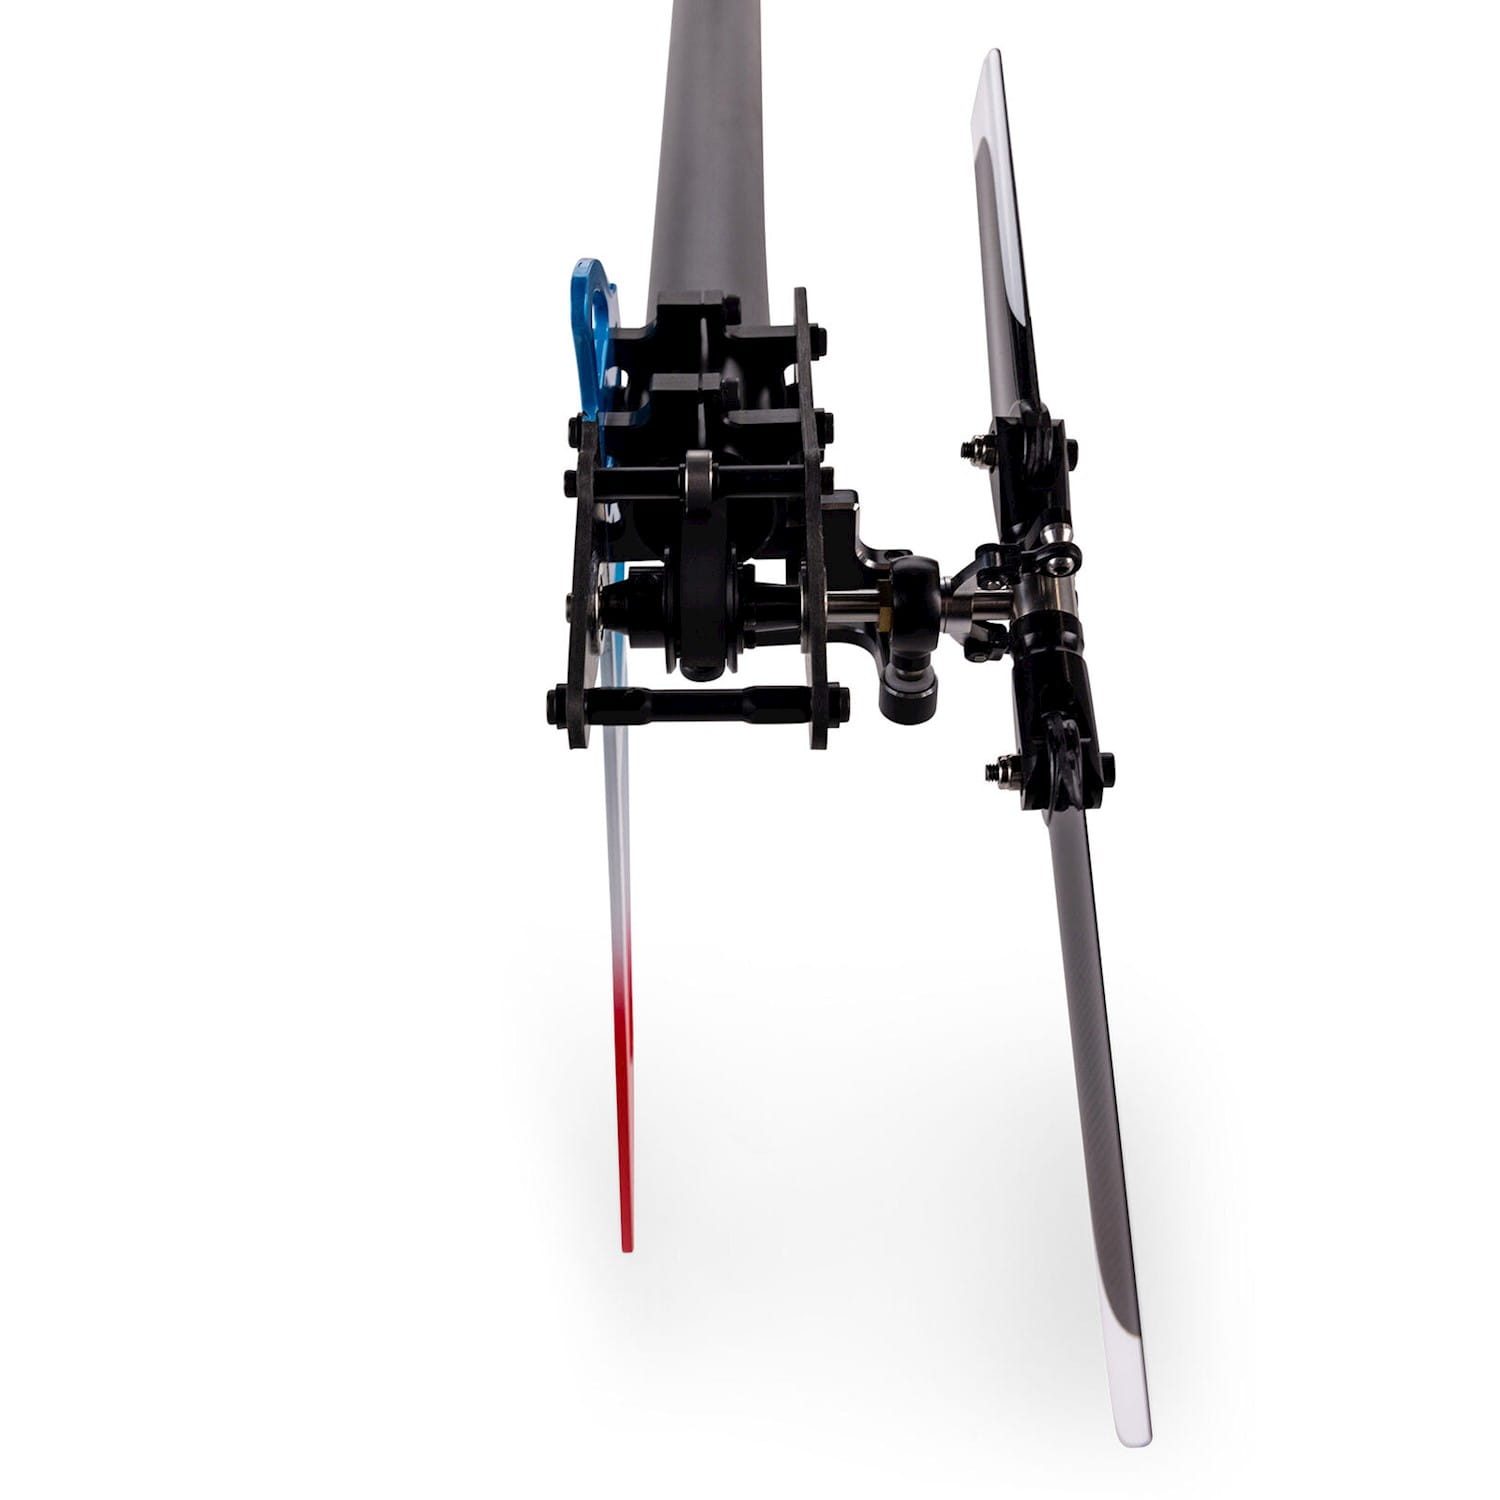 Blade RC Hubschrauber Fusion 550 Quick Build Kit mit Motor und Blätter